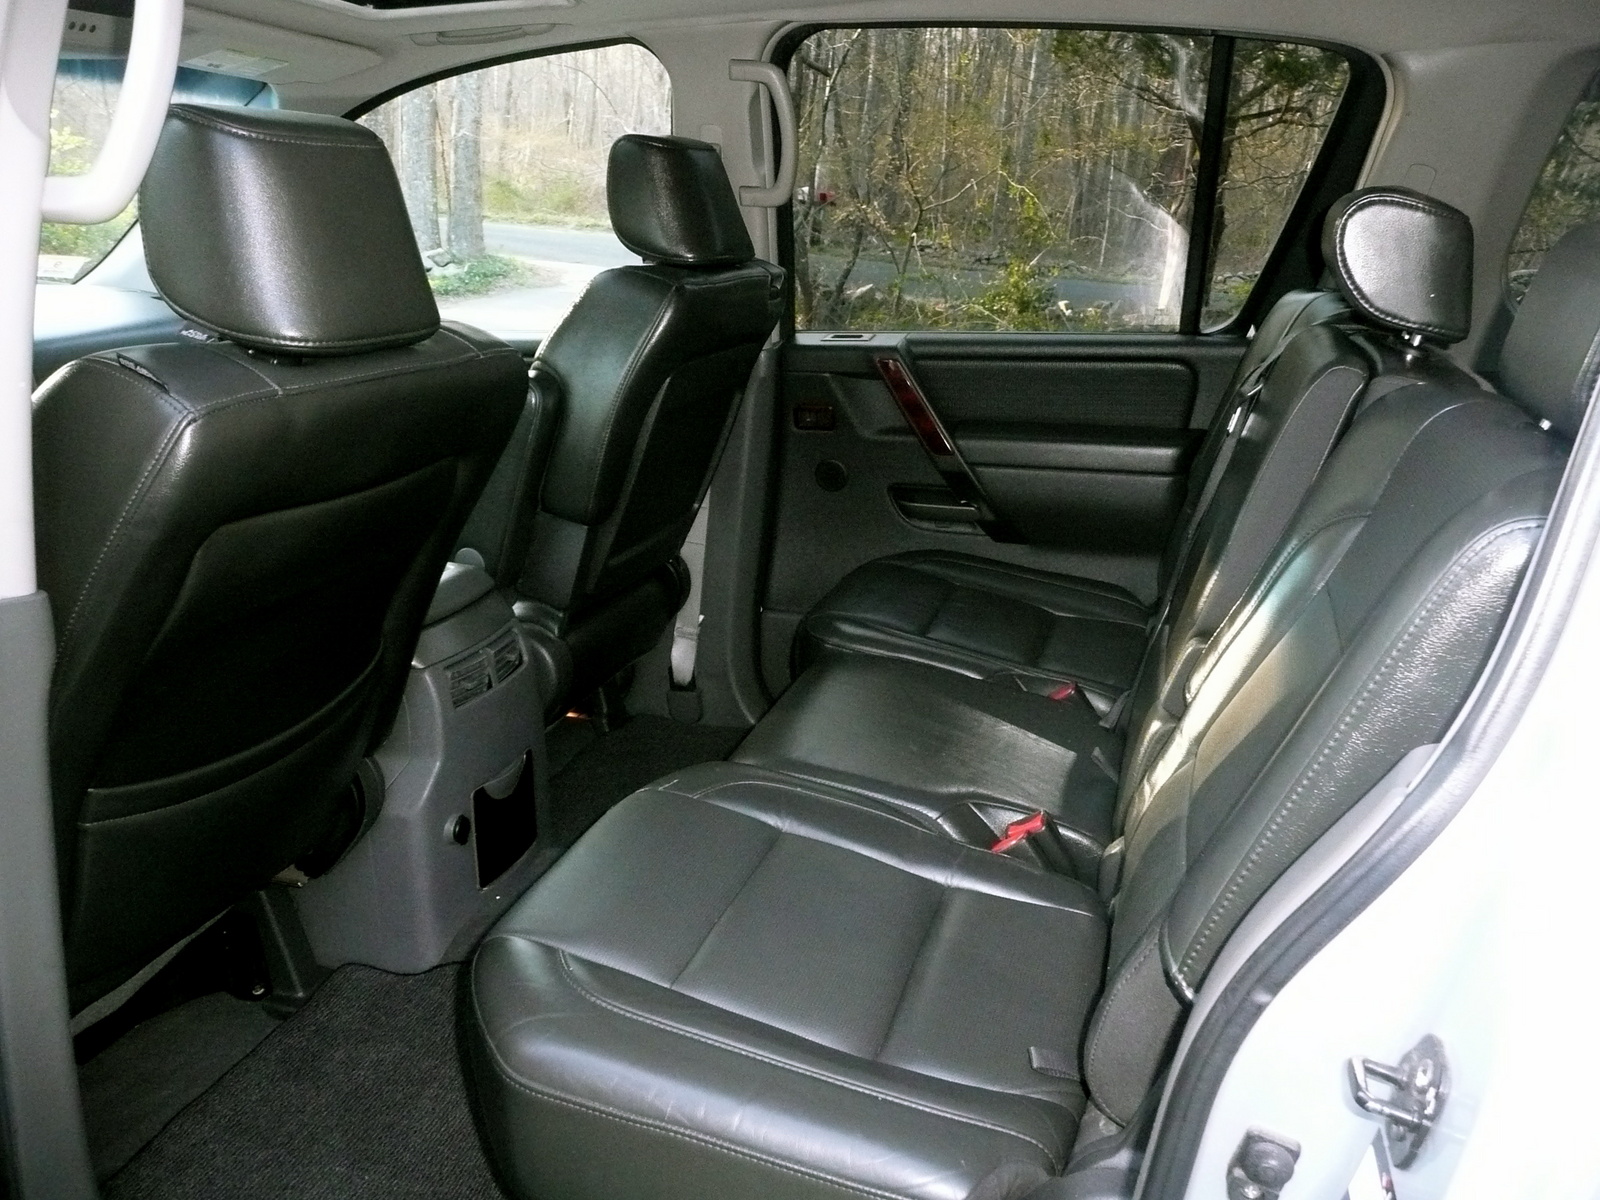 2005 Nissan armada interior pics #2